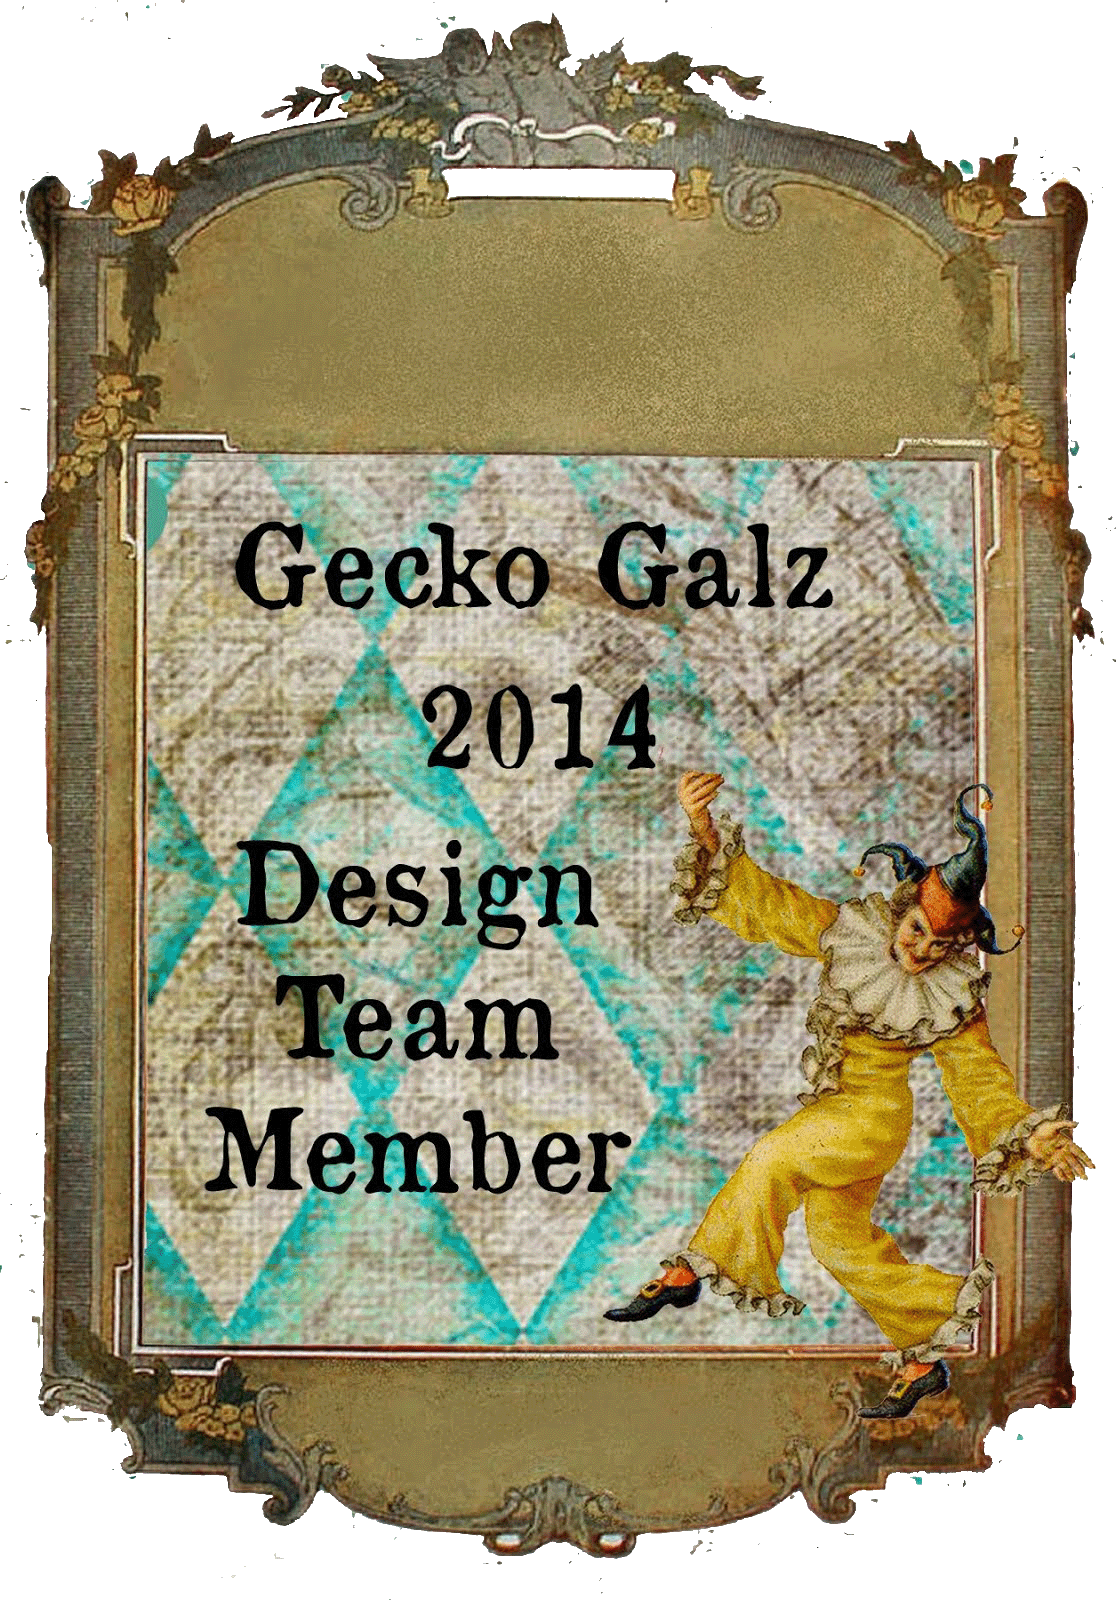 Gecko Galz